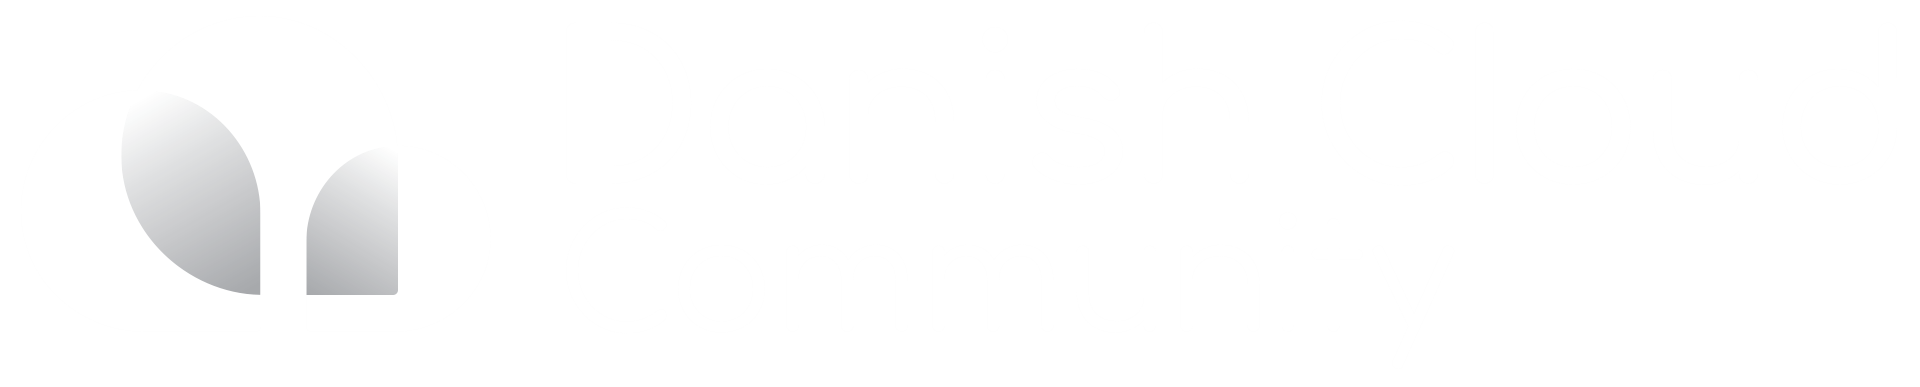 Danish Cloud Community